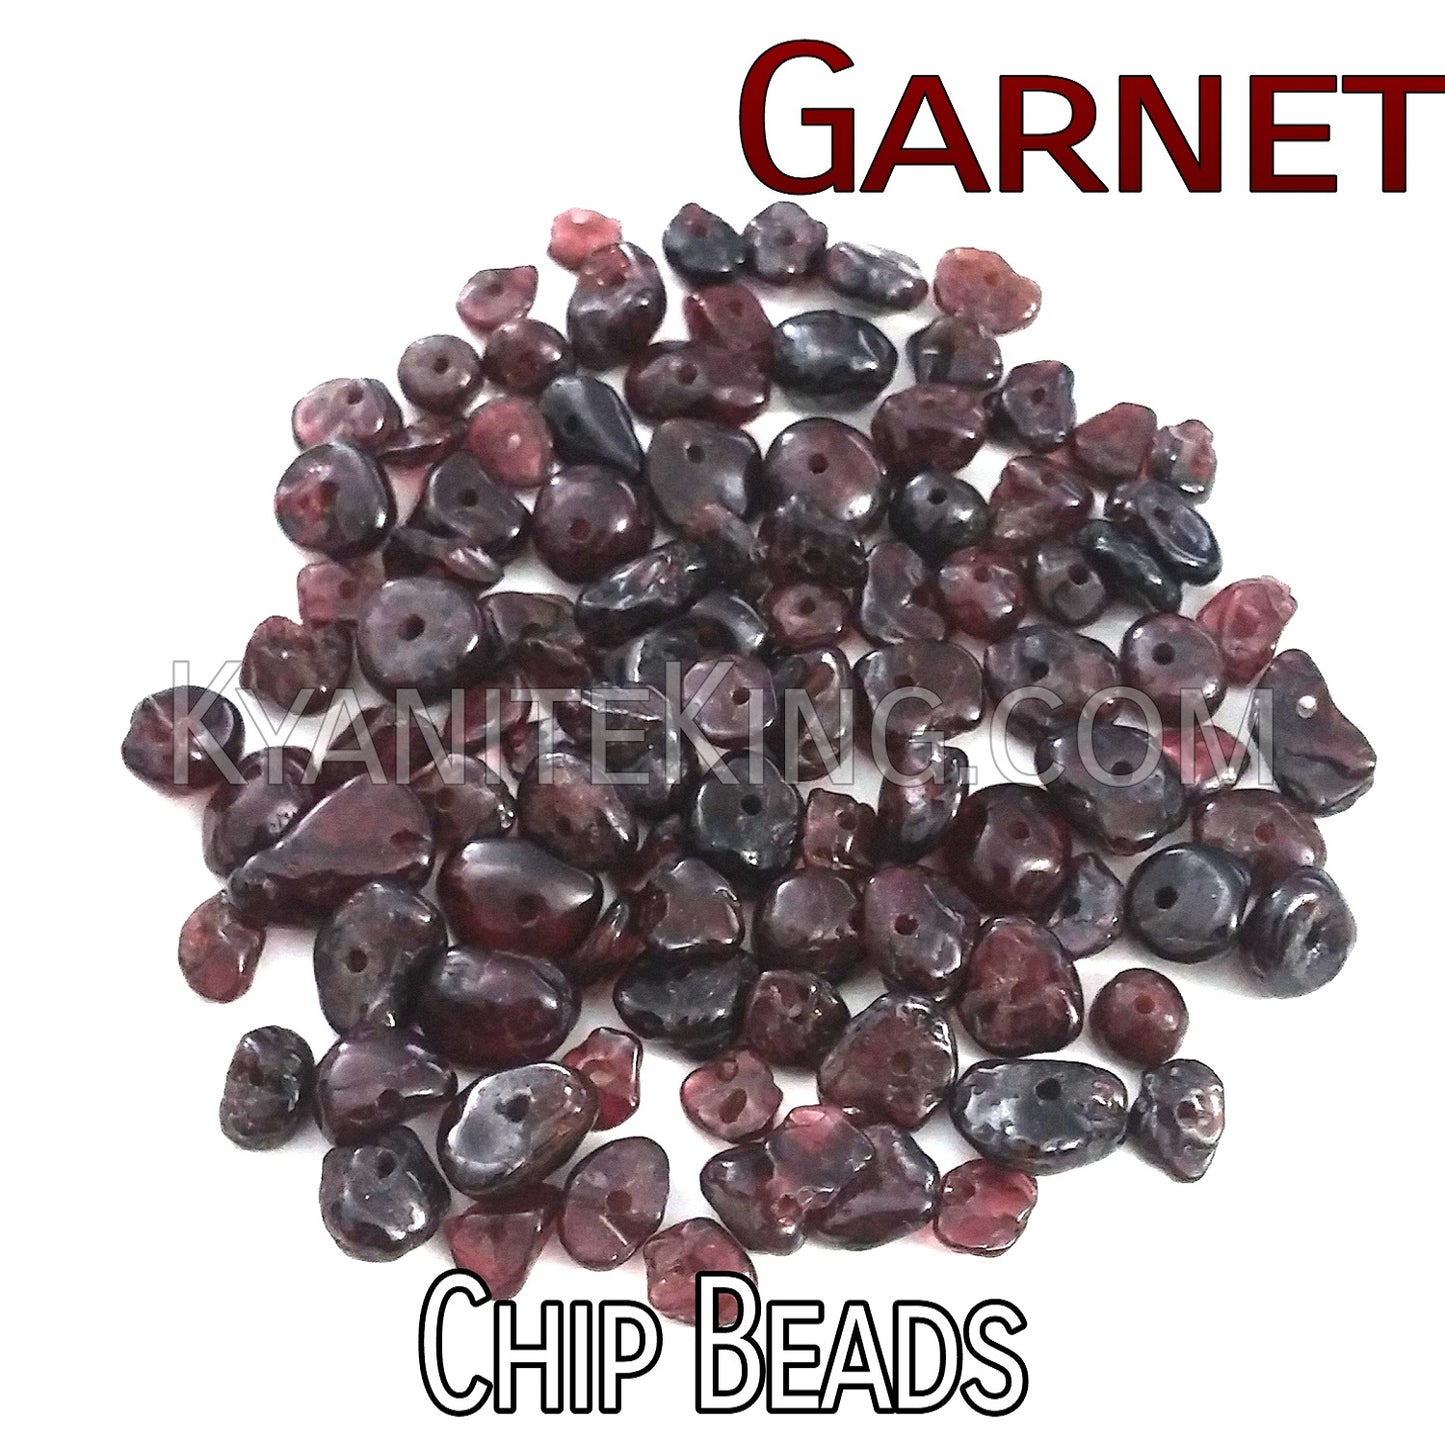 Garnet Chip Beads Stonebeads Kyanite king